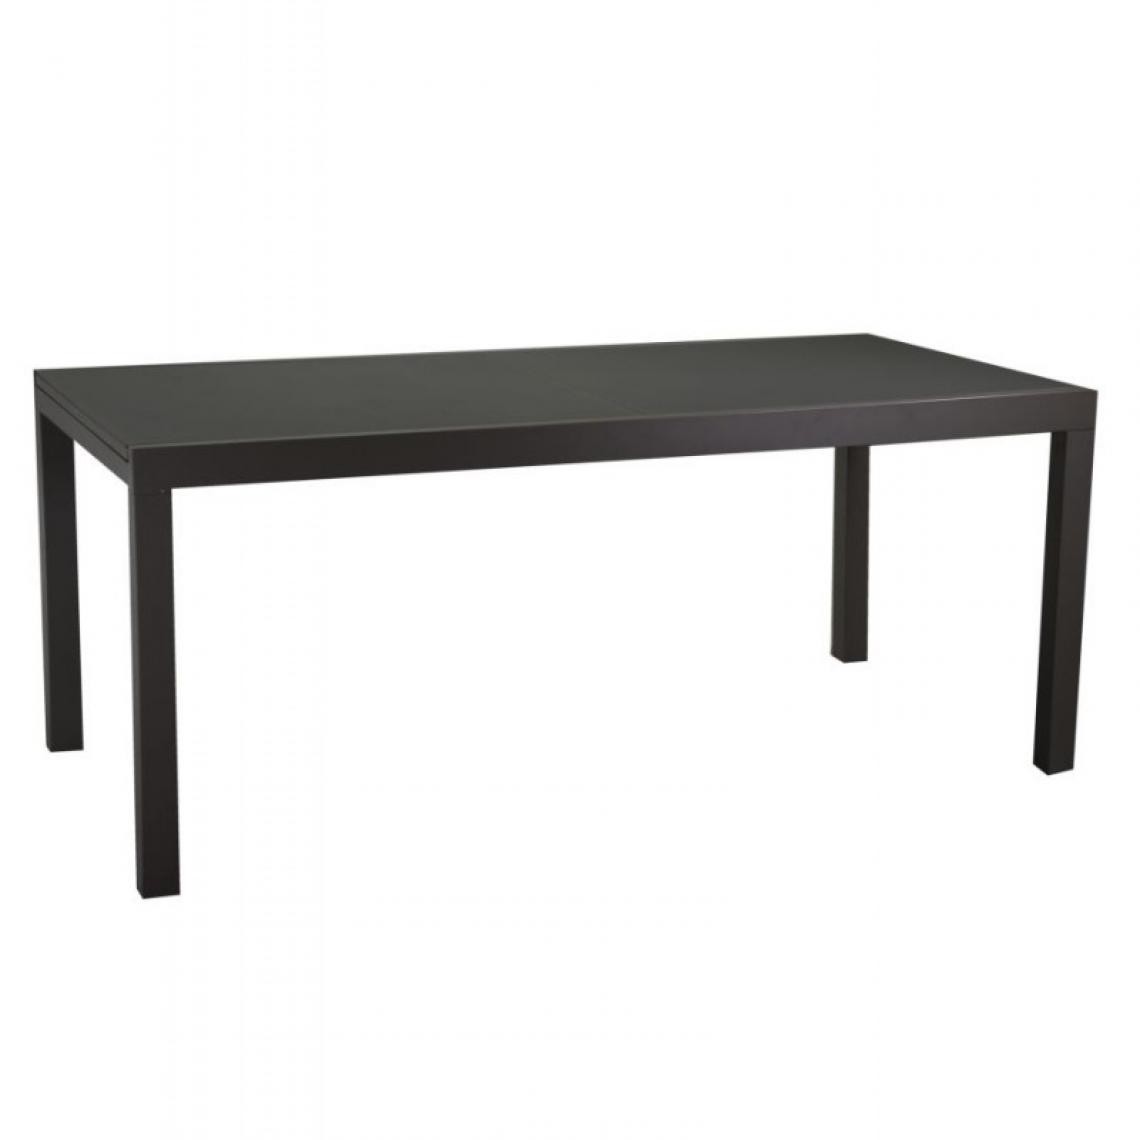 Webmarketpoint - Table en aluminium boise extensible anthracite mat m160 / 220x90xh67,5 / 75 - Tables de jardin